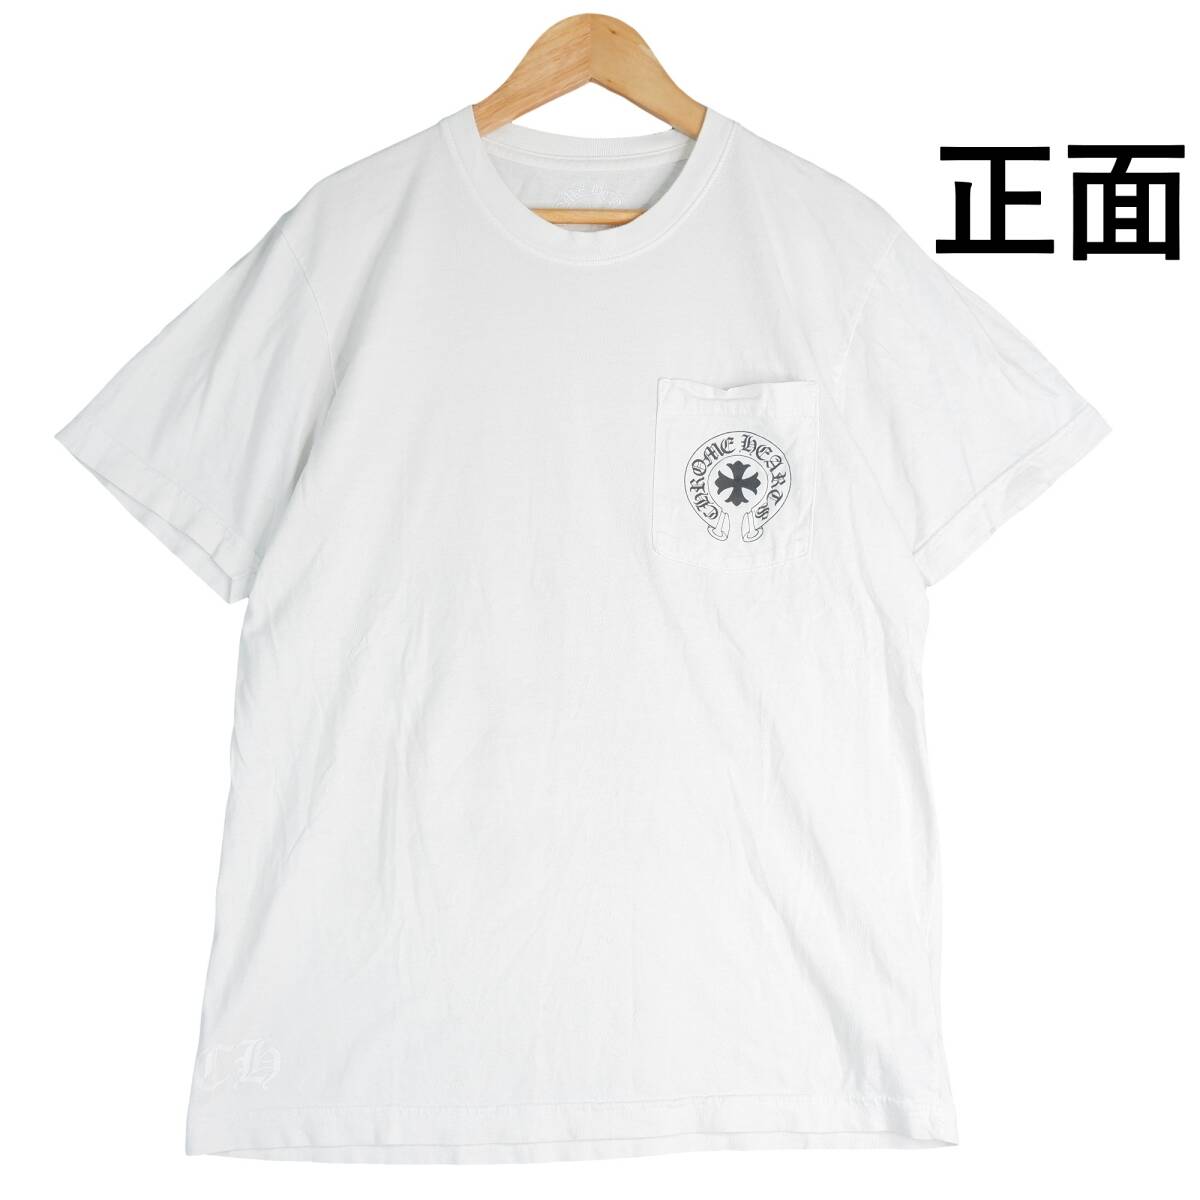 ◆送料無料◆ Chrome Hearts クロムハーツ プリント 半袖 ポケット Tシャツ カットソー 白 ホワイト メンズ M ◆アメリカ製◆ 1514E0_画像2